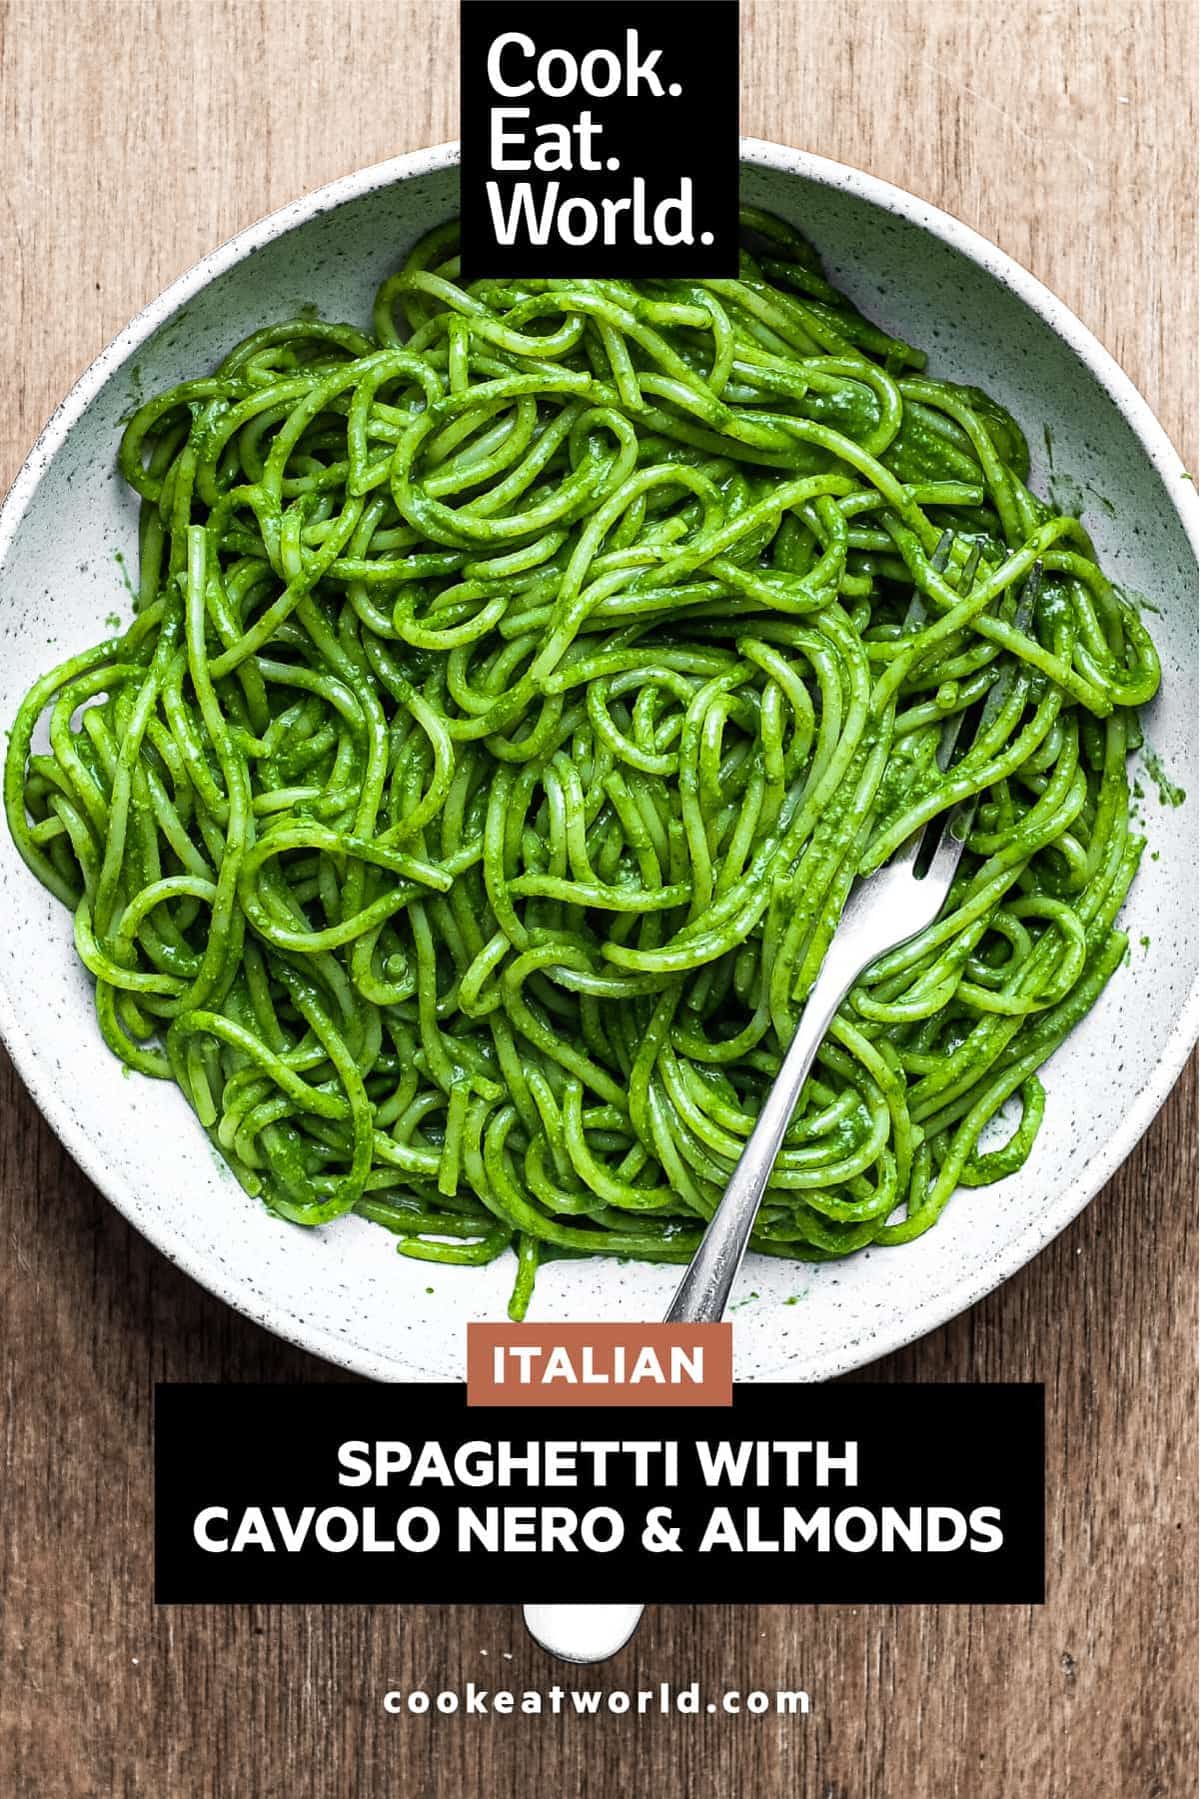 A bowl of spaghetti in a green puree of cavolo nero cabbage